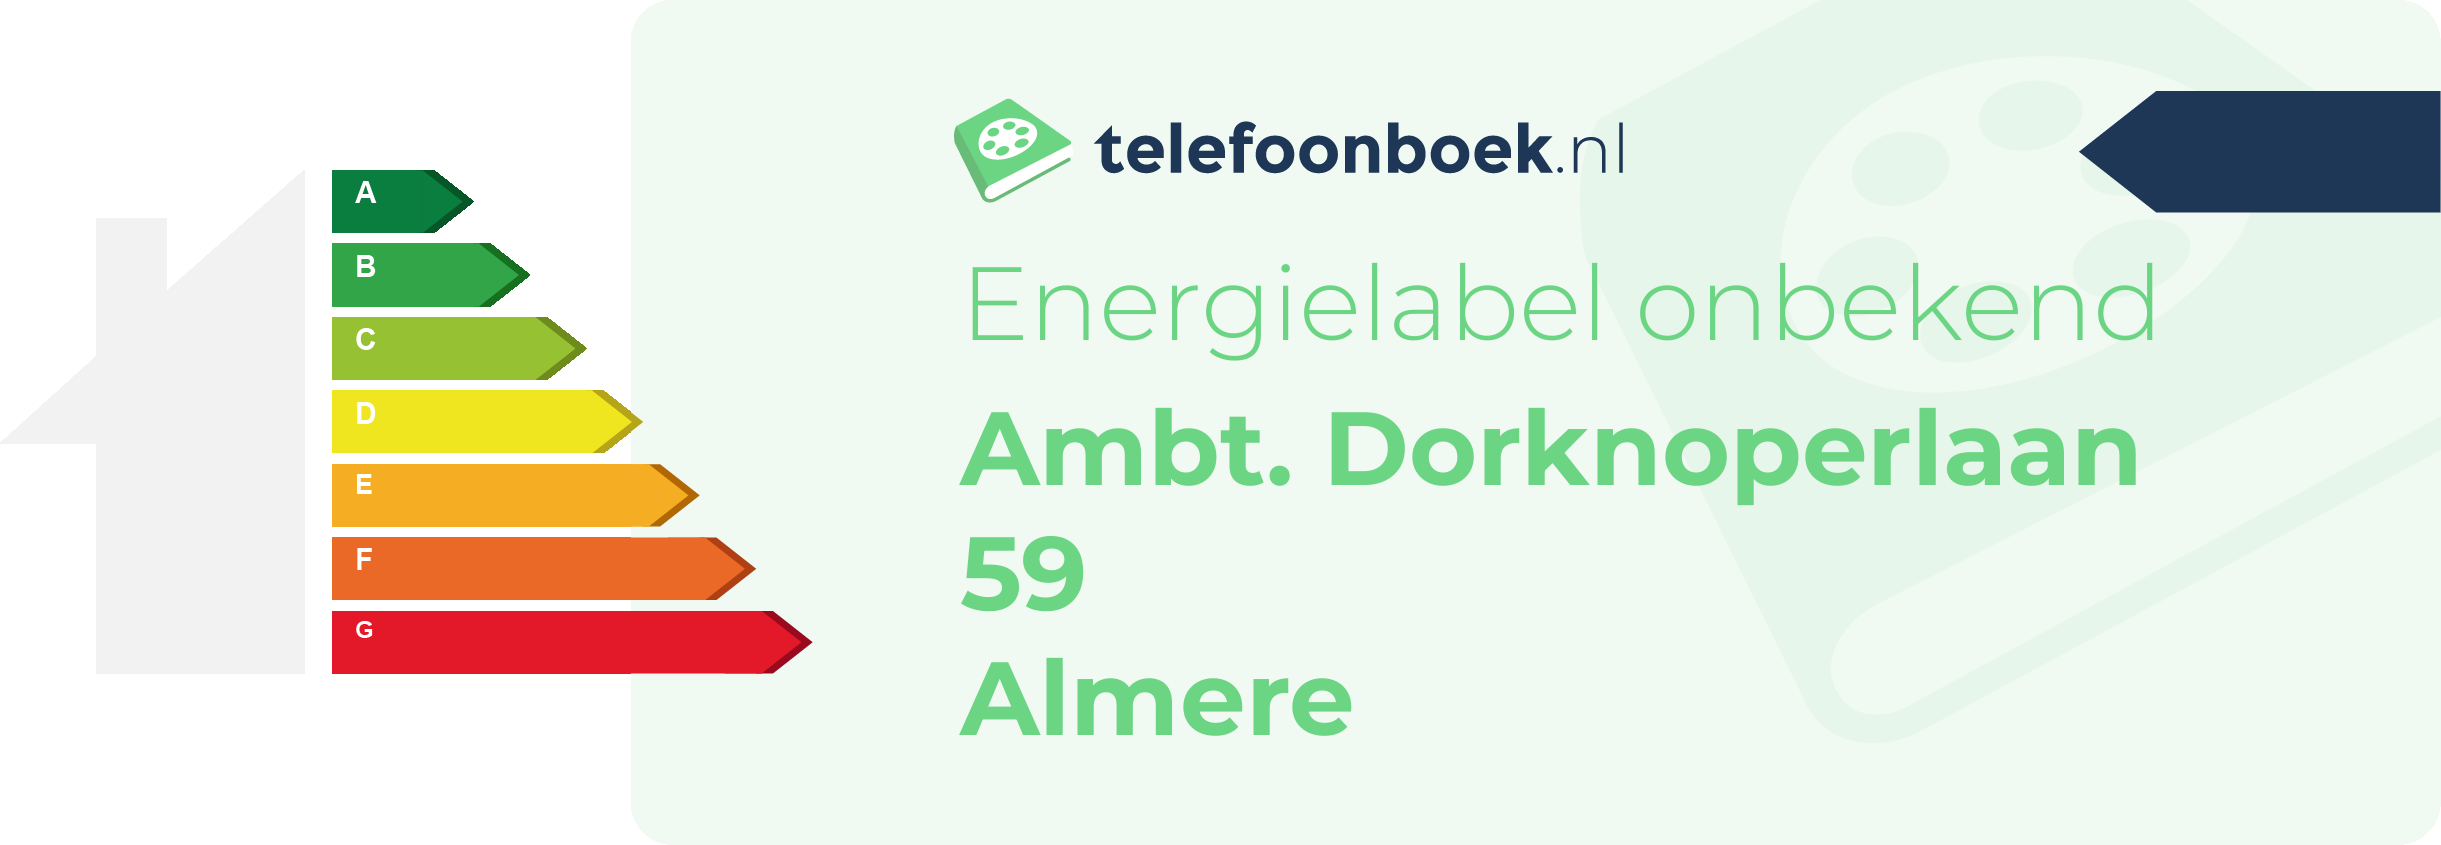 Energielabel Ambt. Dorknoperlaan 59 Almere